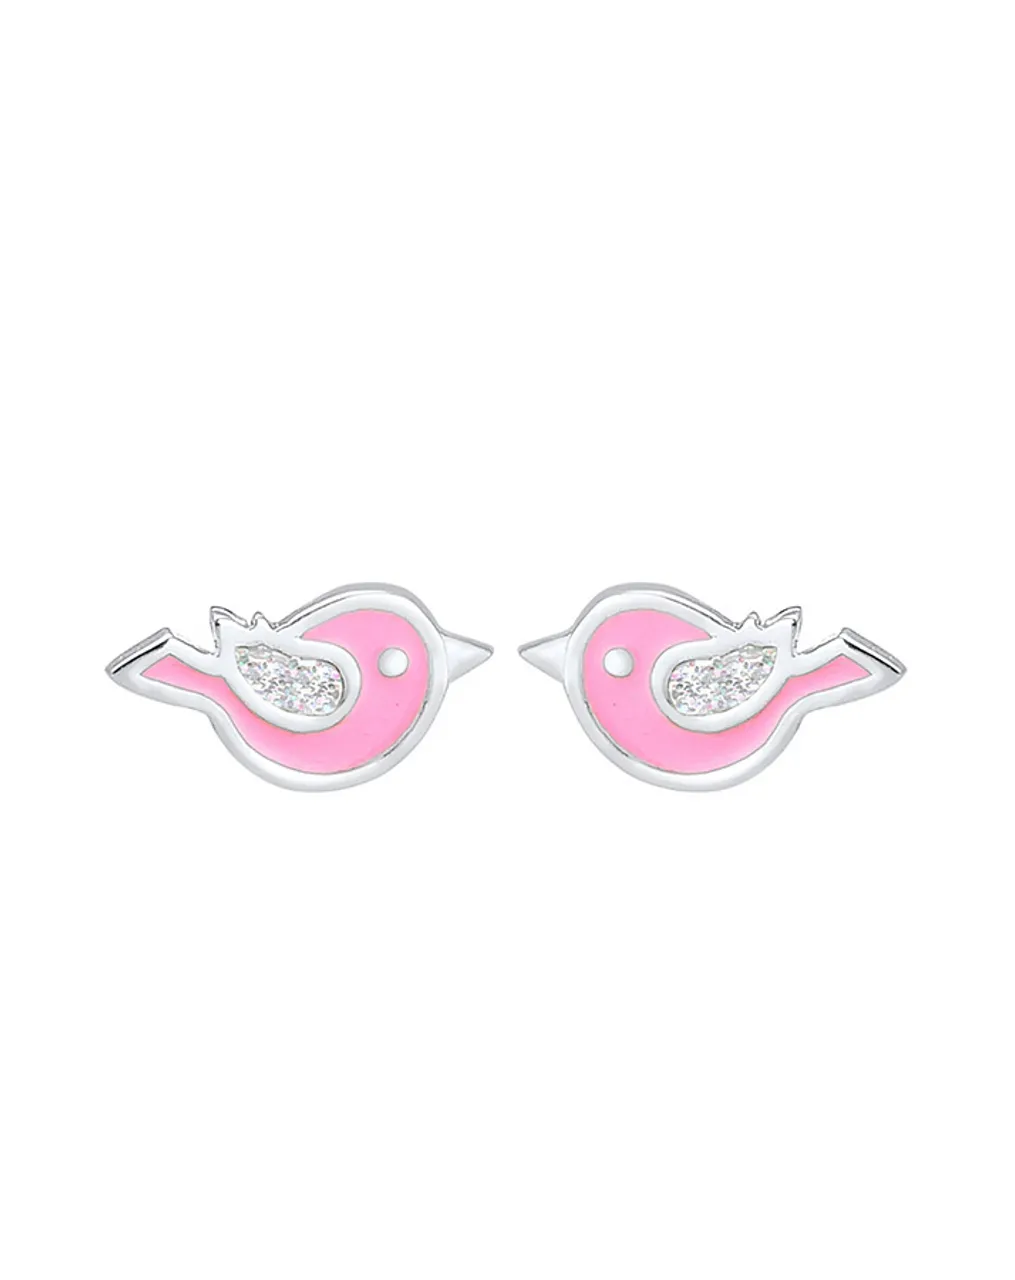 Ohrringe VÖGELCHEN 925er Silber in silber/rosa